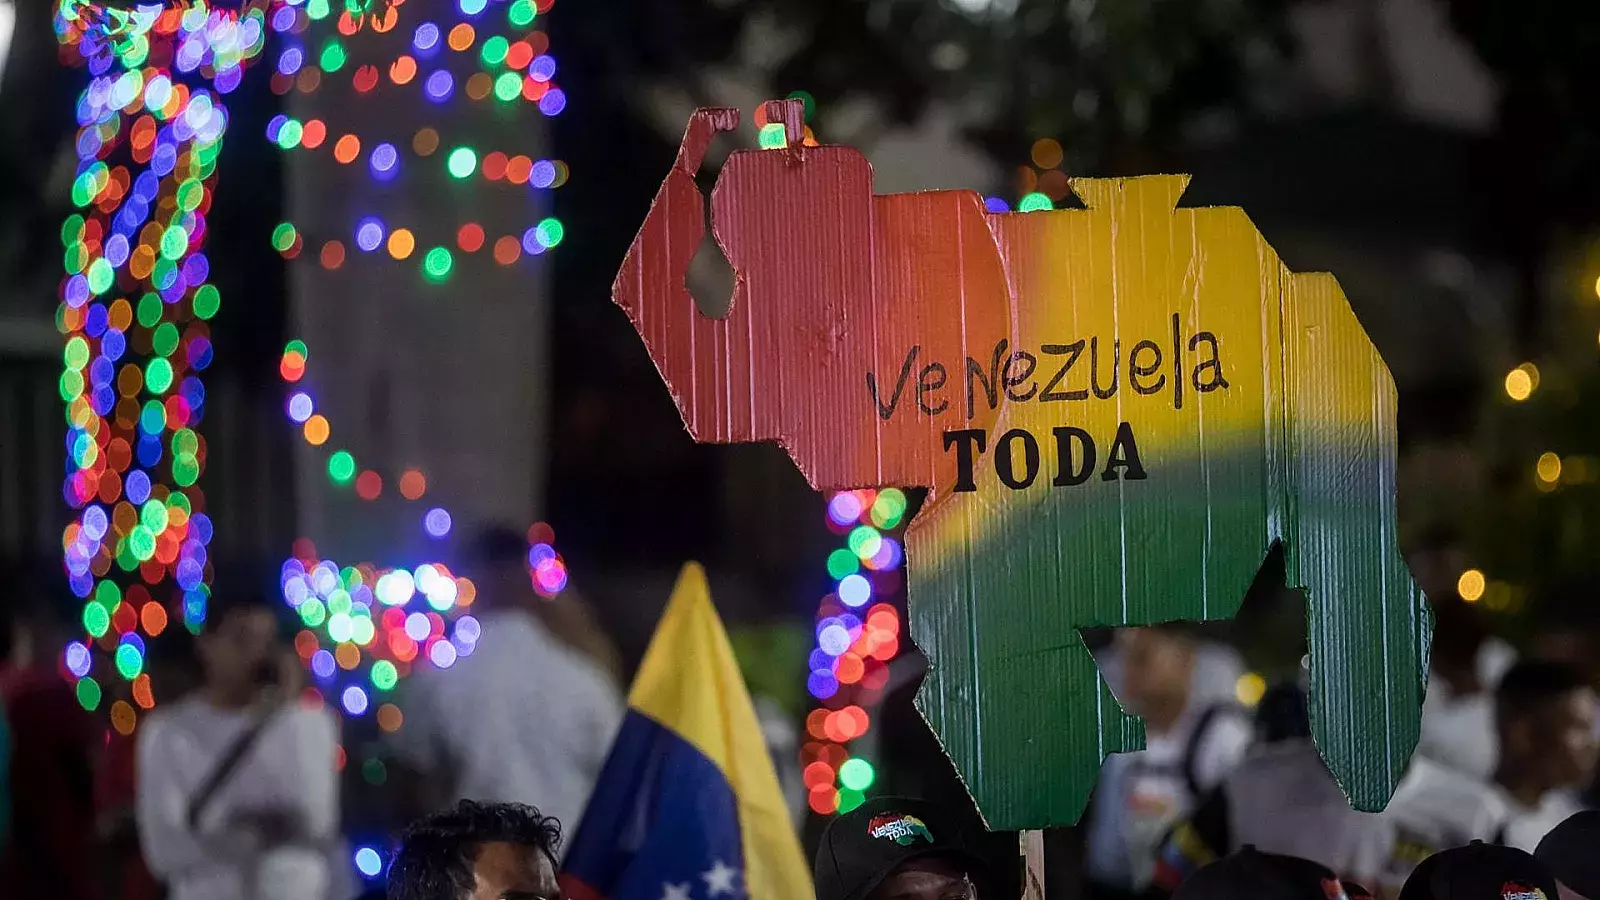 Venezuela dividida: la mayoría opina que el Esequibo les pertenece pese a que pocos votaron en el referéndum del régimen